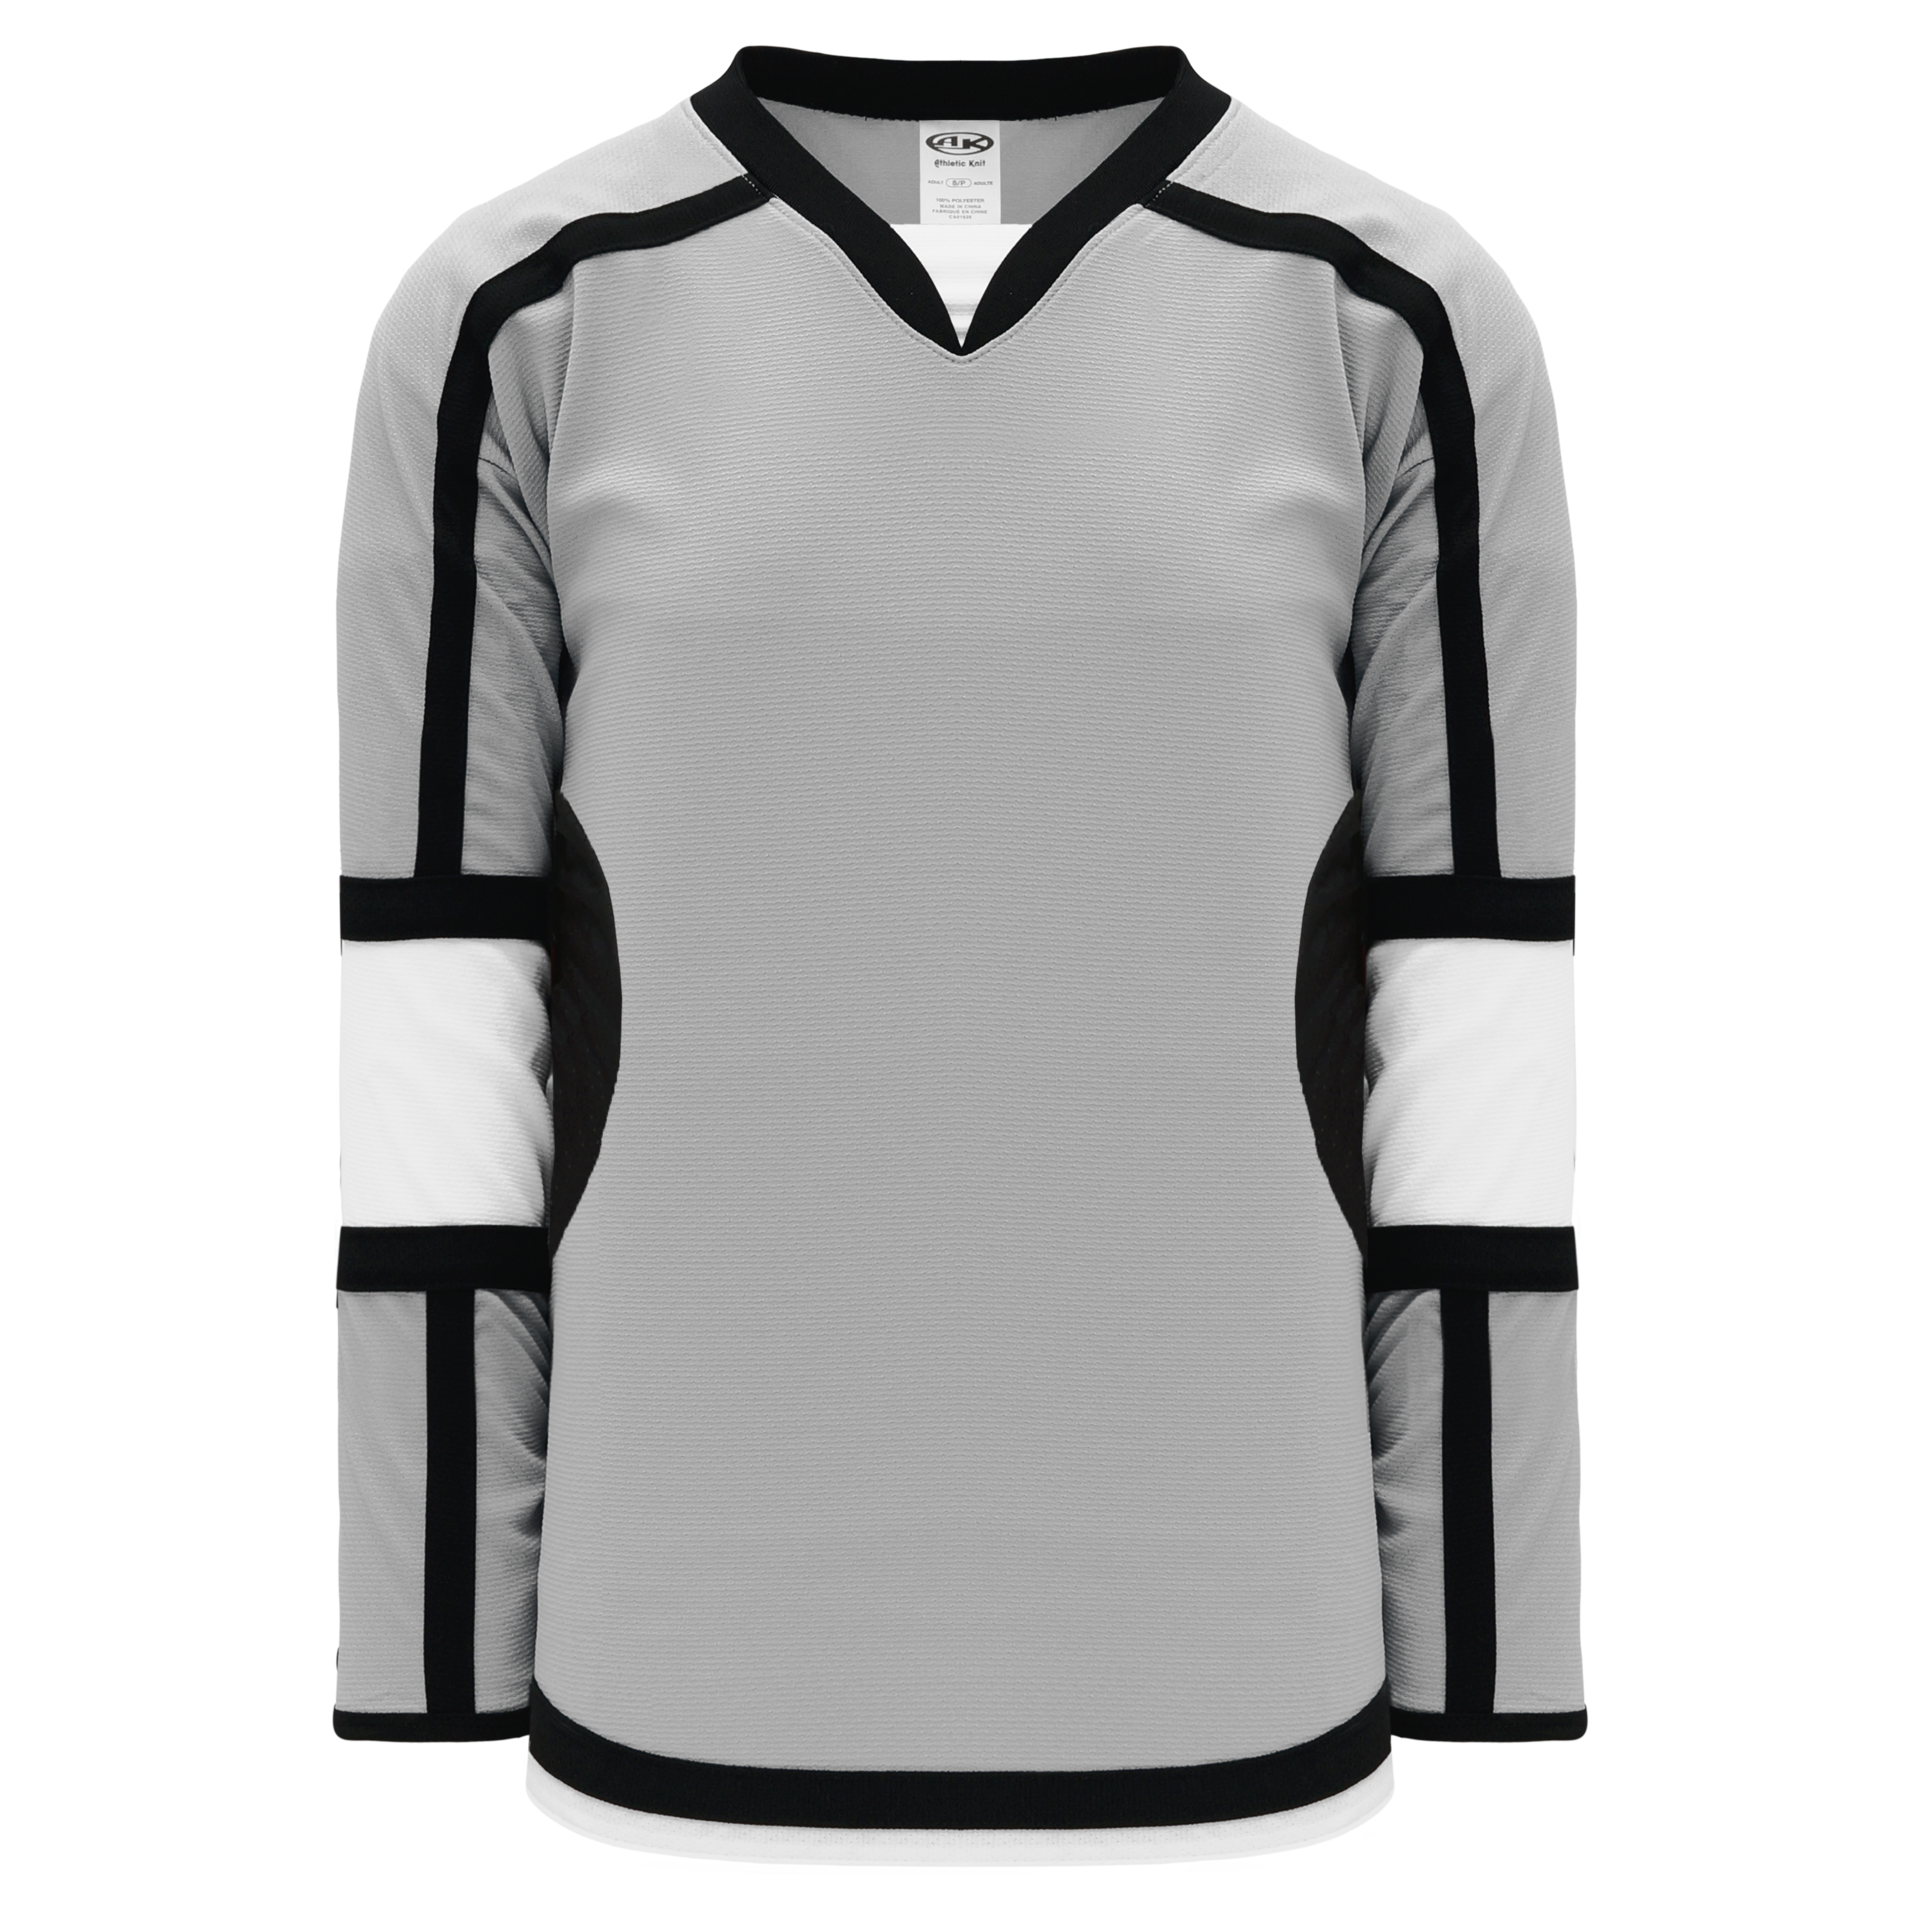 Stadium Youth Hockey Jersey - in White/Black/Grey Size Large/X-Large